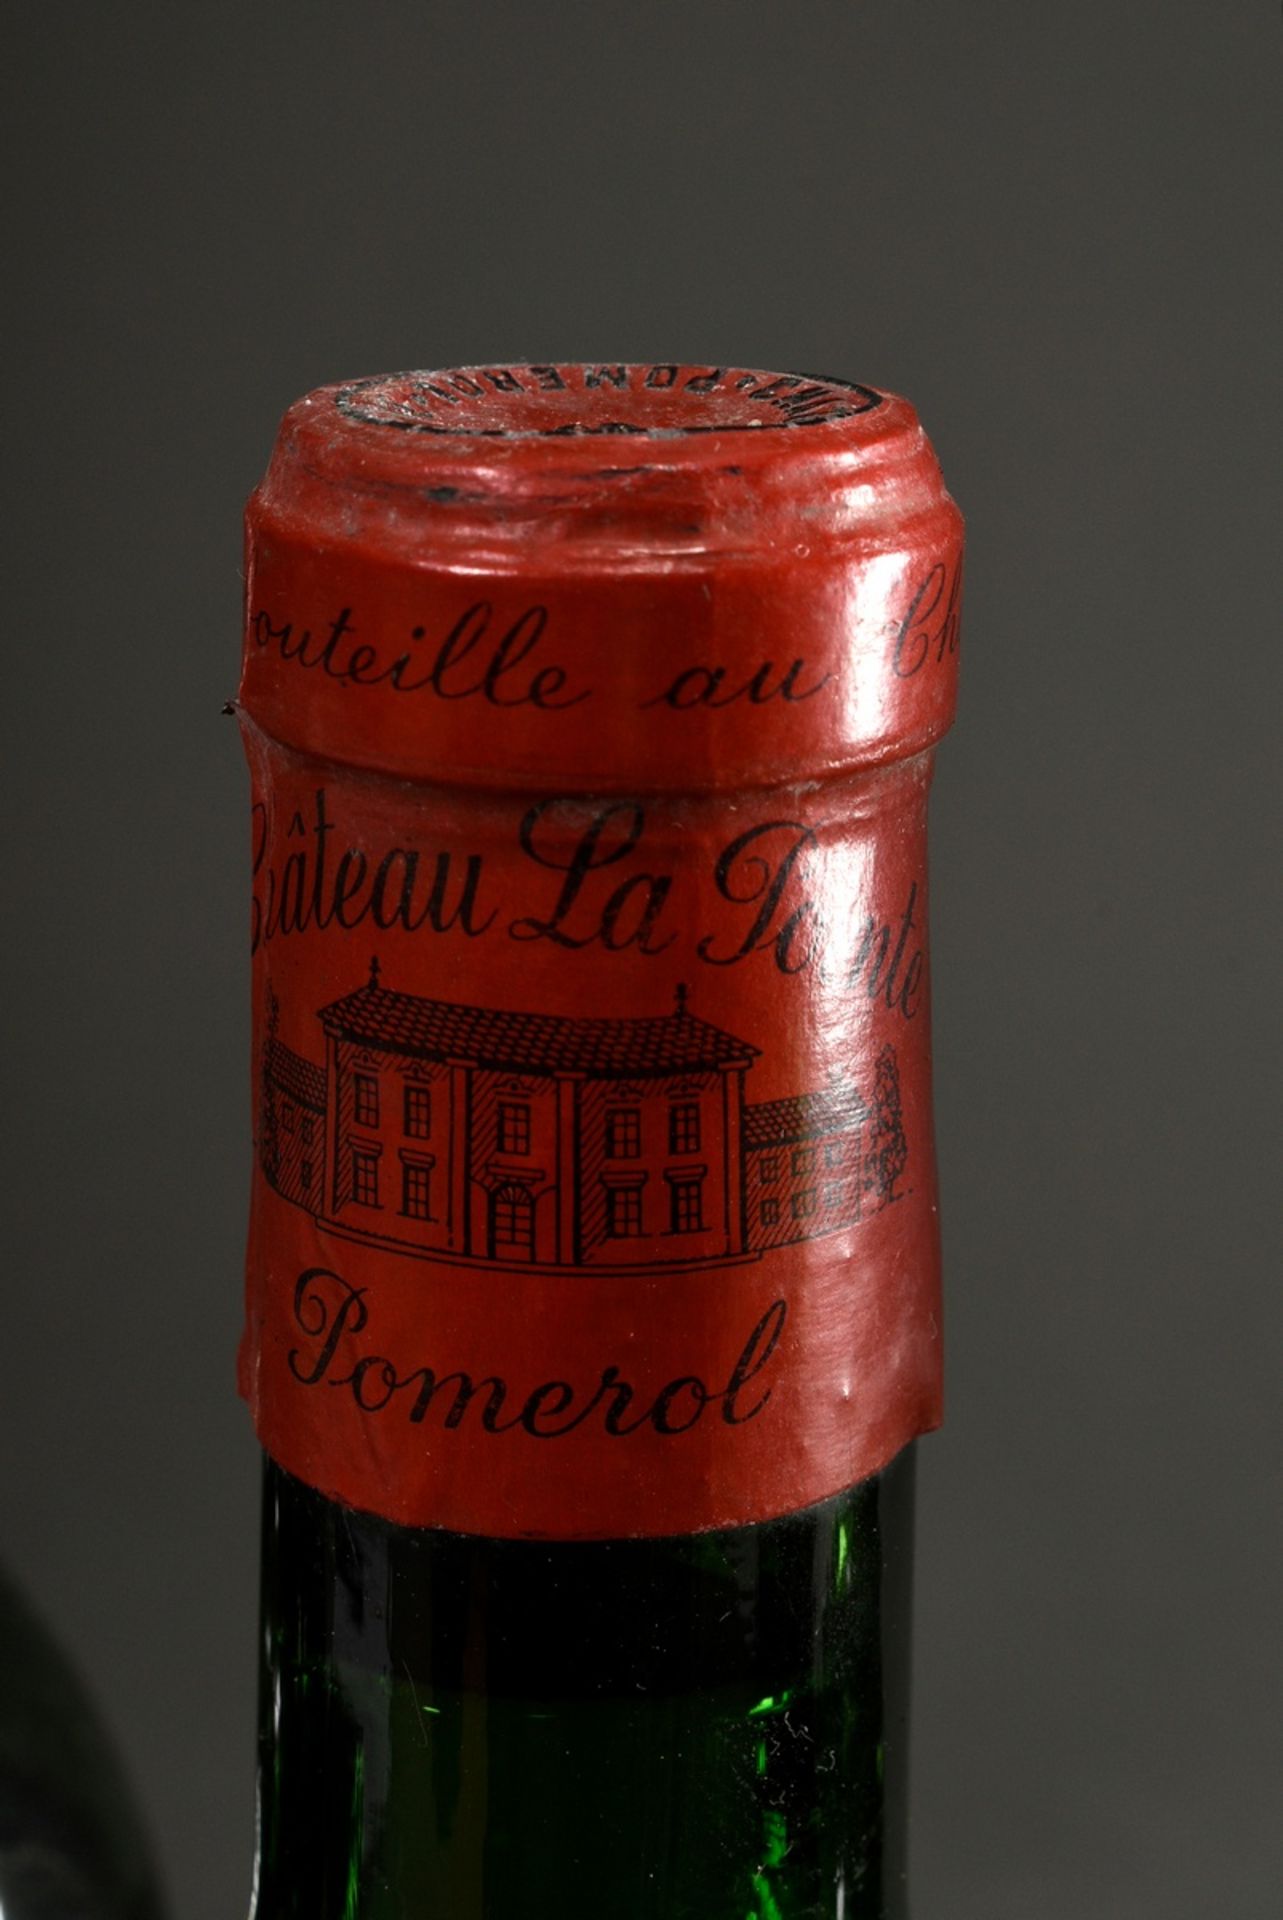 6 Flaschen 1967 Chateau La Pointe grand cru, mebac, Pomerol, Frankreich, Rotwein, 0,75l, durchgehen - Bild 4 aus 6